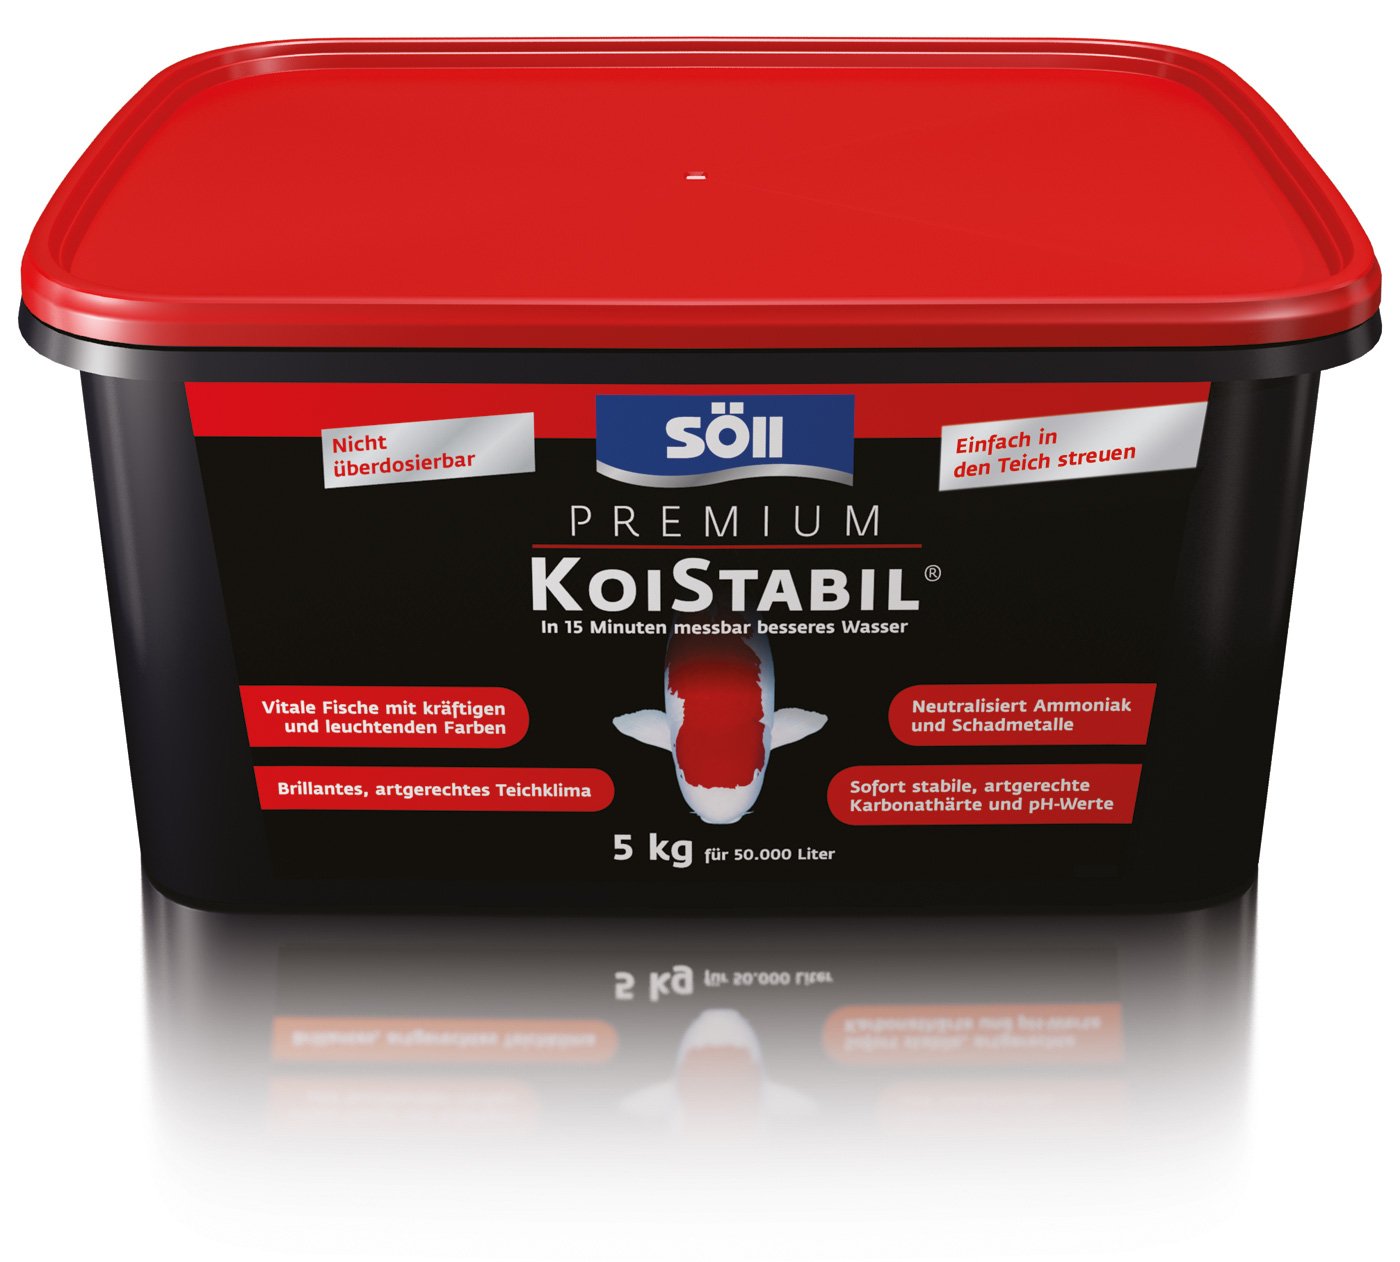 Söll 81892 Premium KoiStabil, 5 kg - effektiver Teichstabilisator / koigerechter Wasseraufbereiter / reguliert pH-Wert und KH-Wert für messbar besseres Teichwasser im Gartenteich Fischteich Koiteich